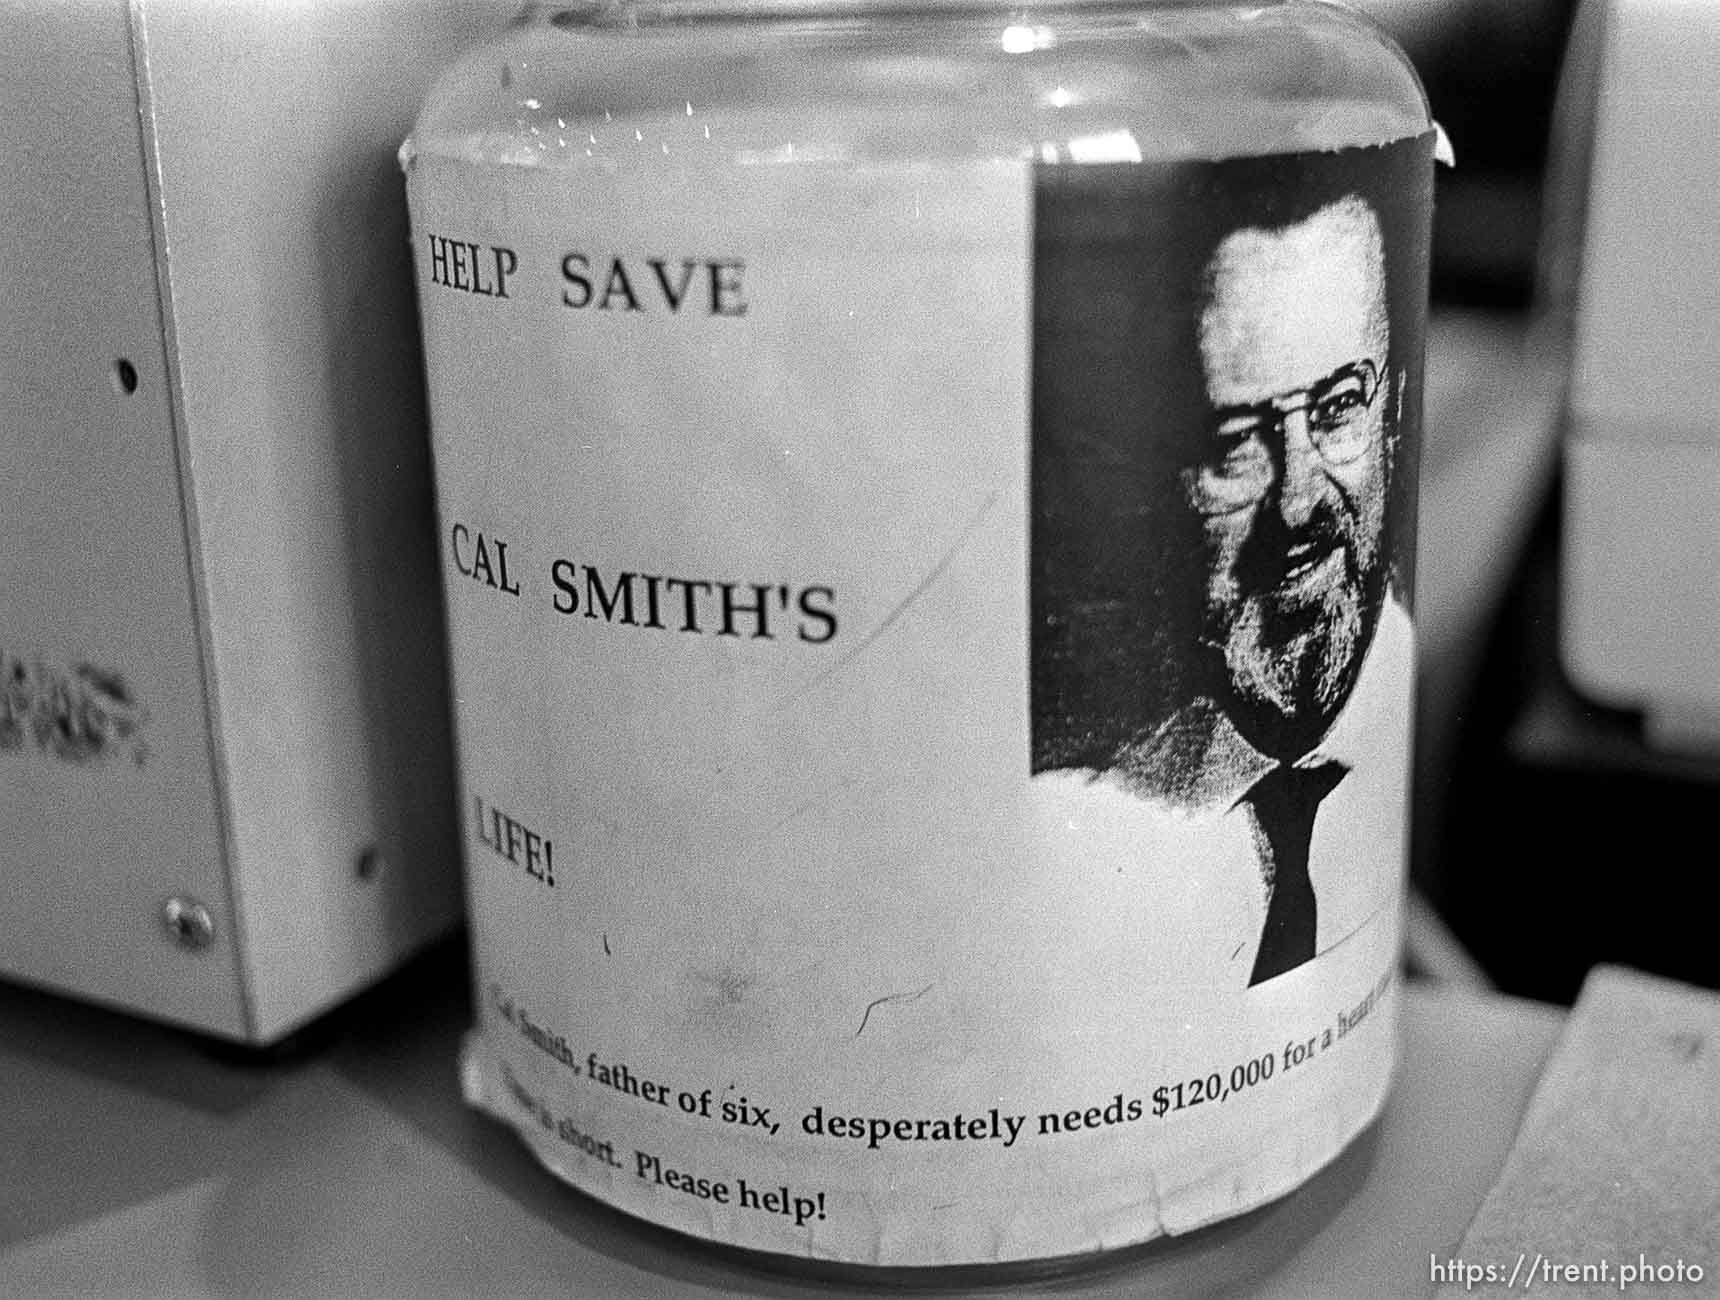 Help Save Cal Smith’s Life